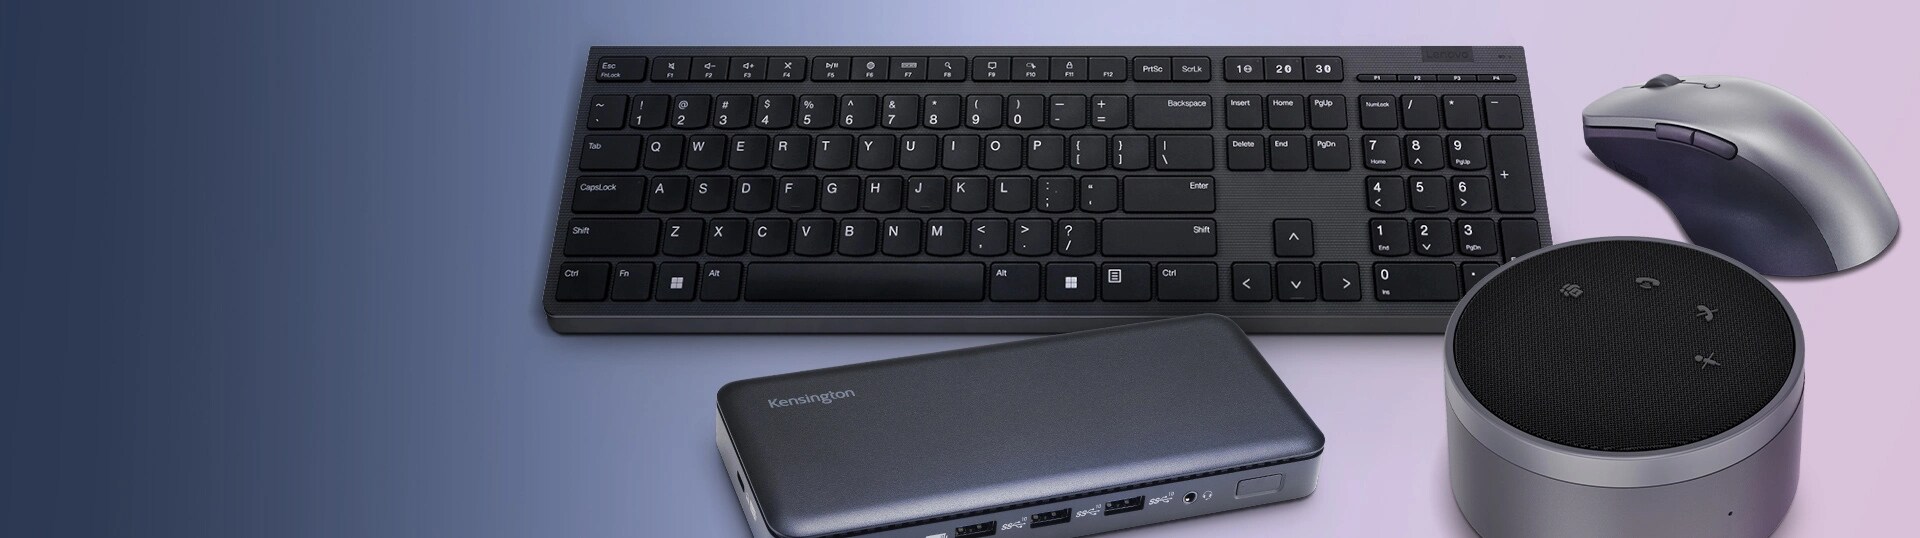 Un haut-parleur avec fil Lenovo Go, un clavier sans fil professionnel Lenovo, une souris lenovo professionnelle Bluetooth rechargeable et une station d’accueil USB-C triple vidéo de 10 Gbit/s sont en arrière-plan.